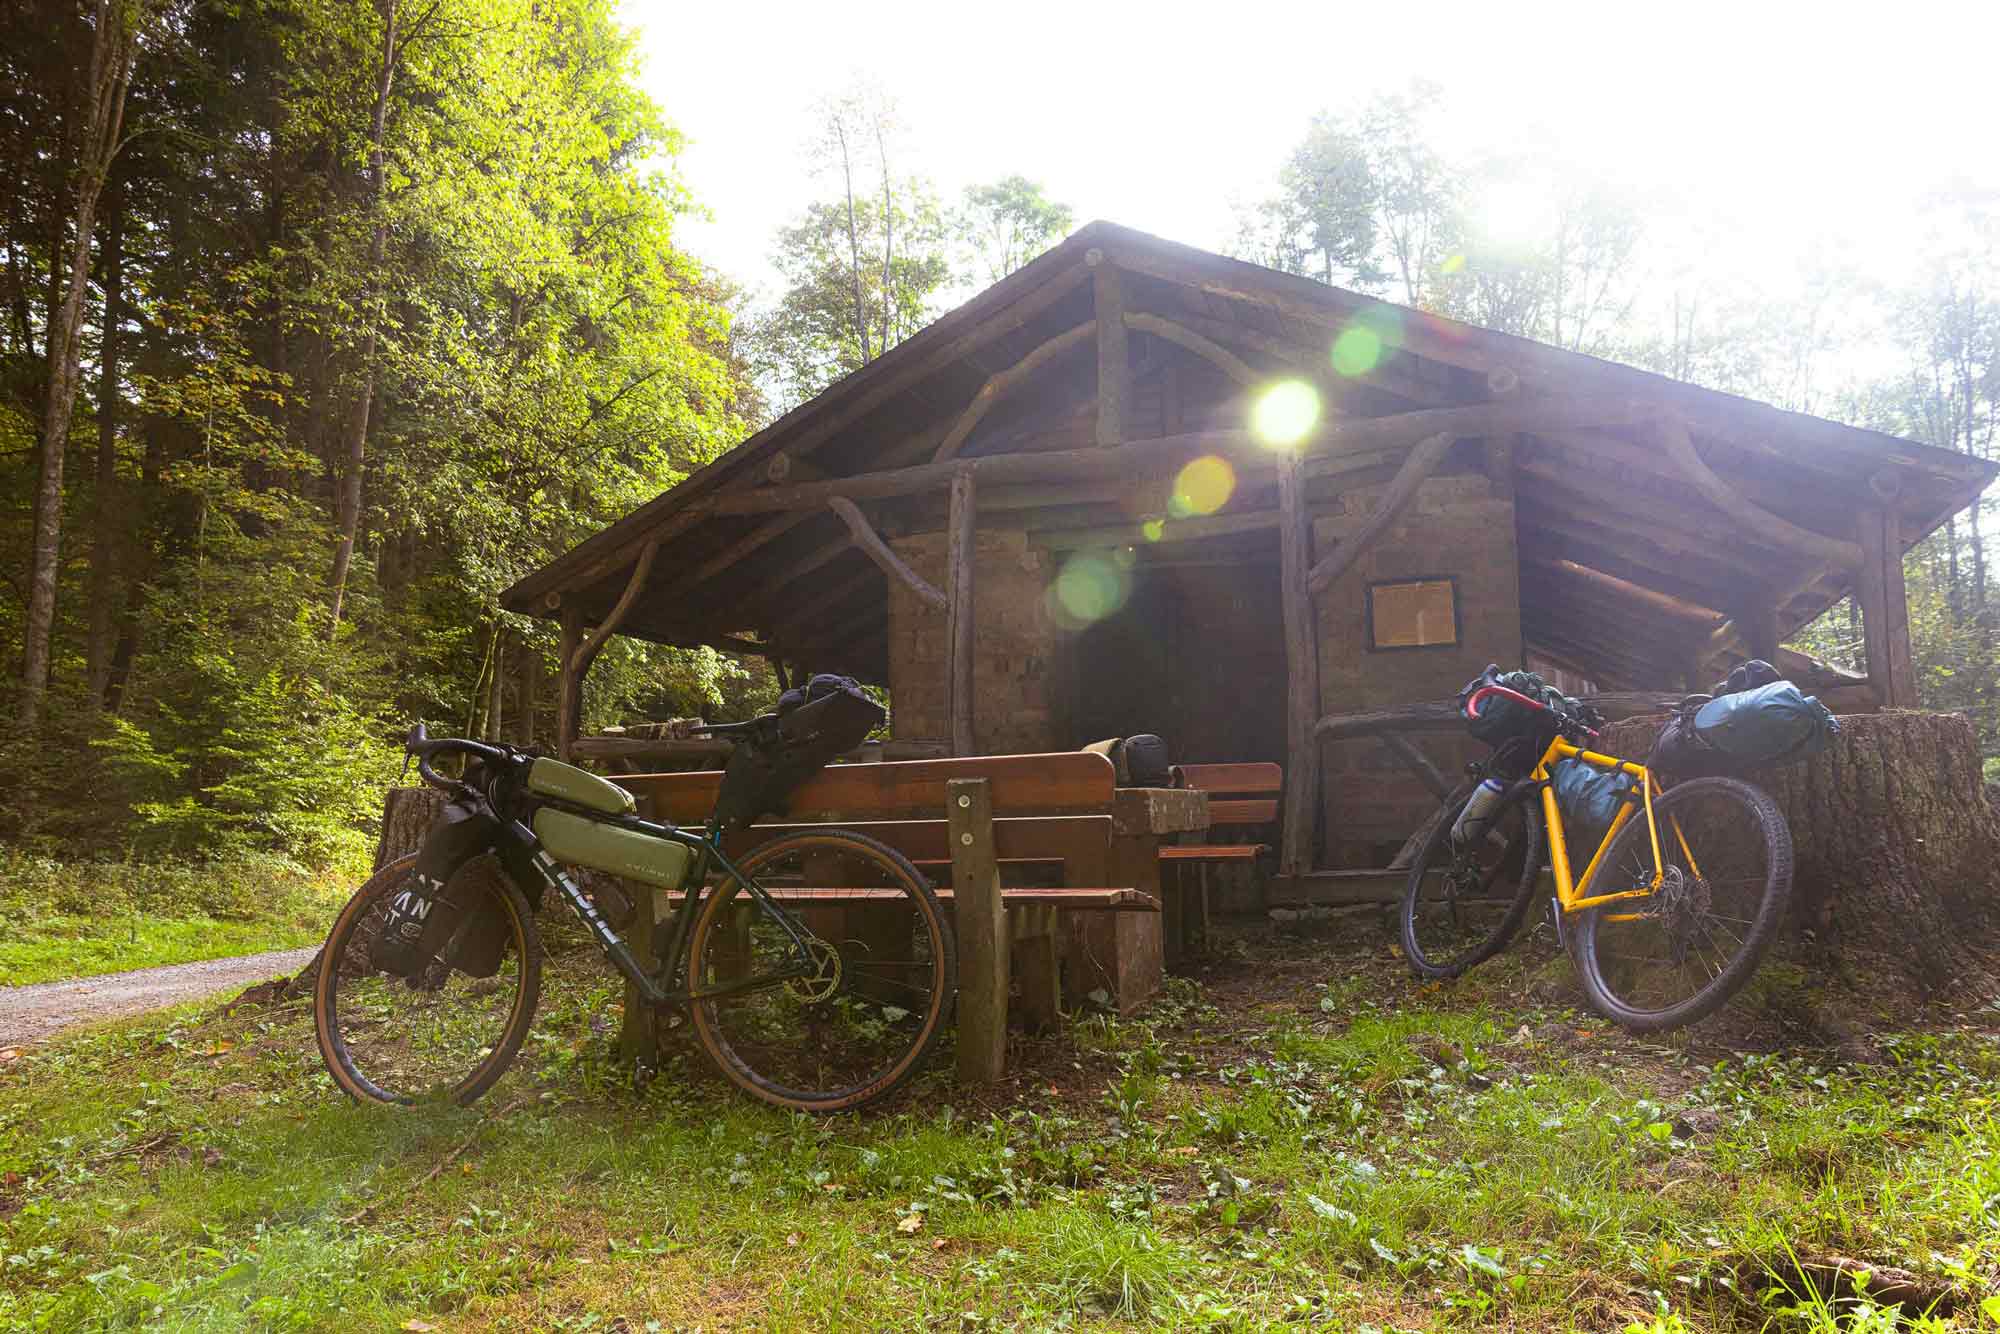 Da wir auch unter freiem himmel übernachten wollten, sind die beiden  gravel bikes recht gut beladen. Mindestens eine nacht draußen in der natur bietet sich beim odenwald bikepacking aber einfach an!